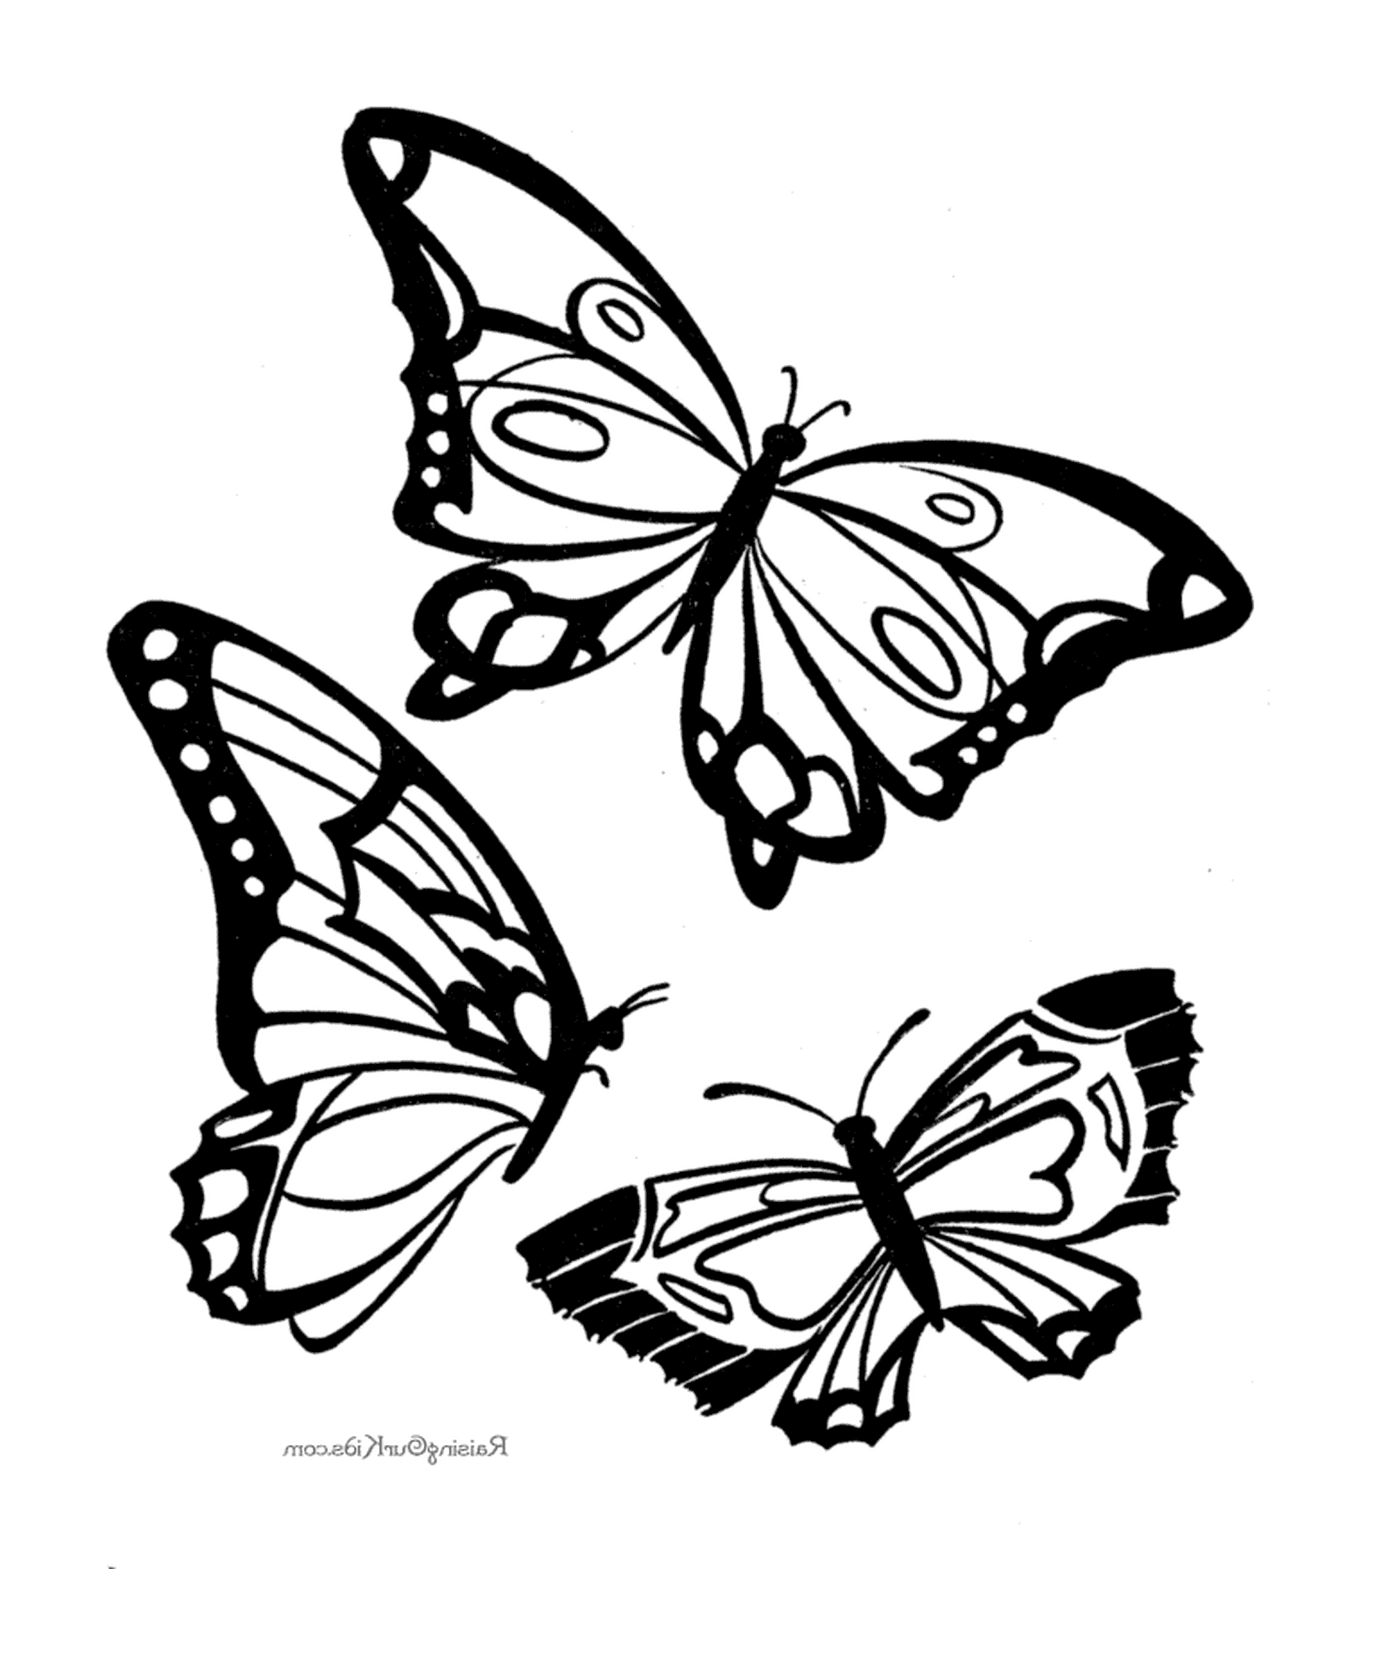  三个黑白蝴蝶设计 